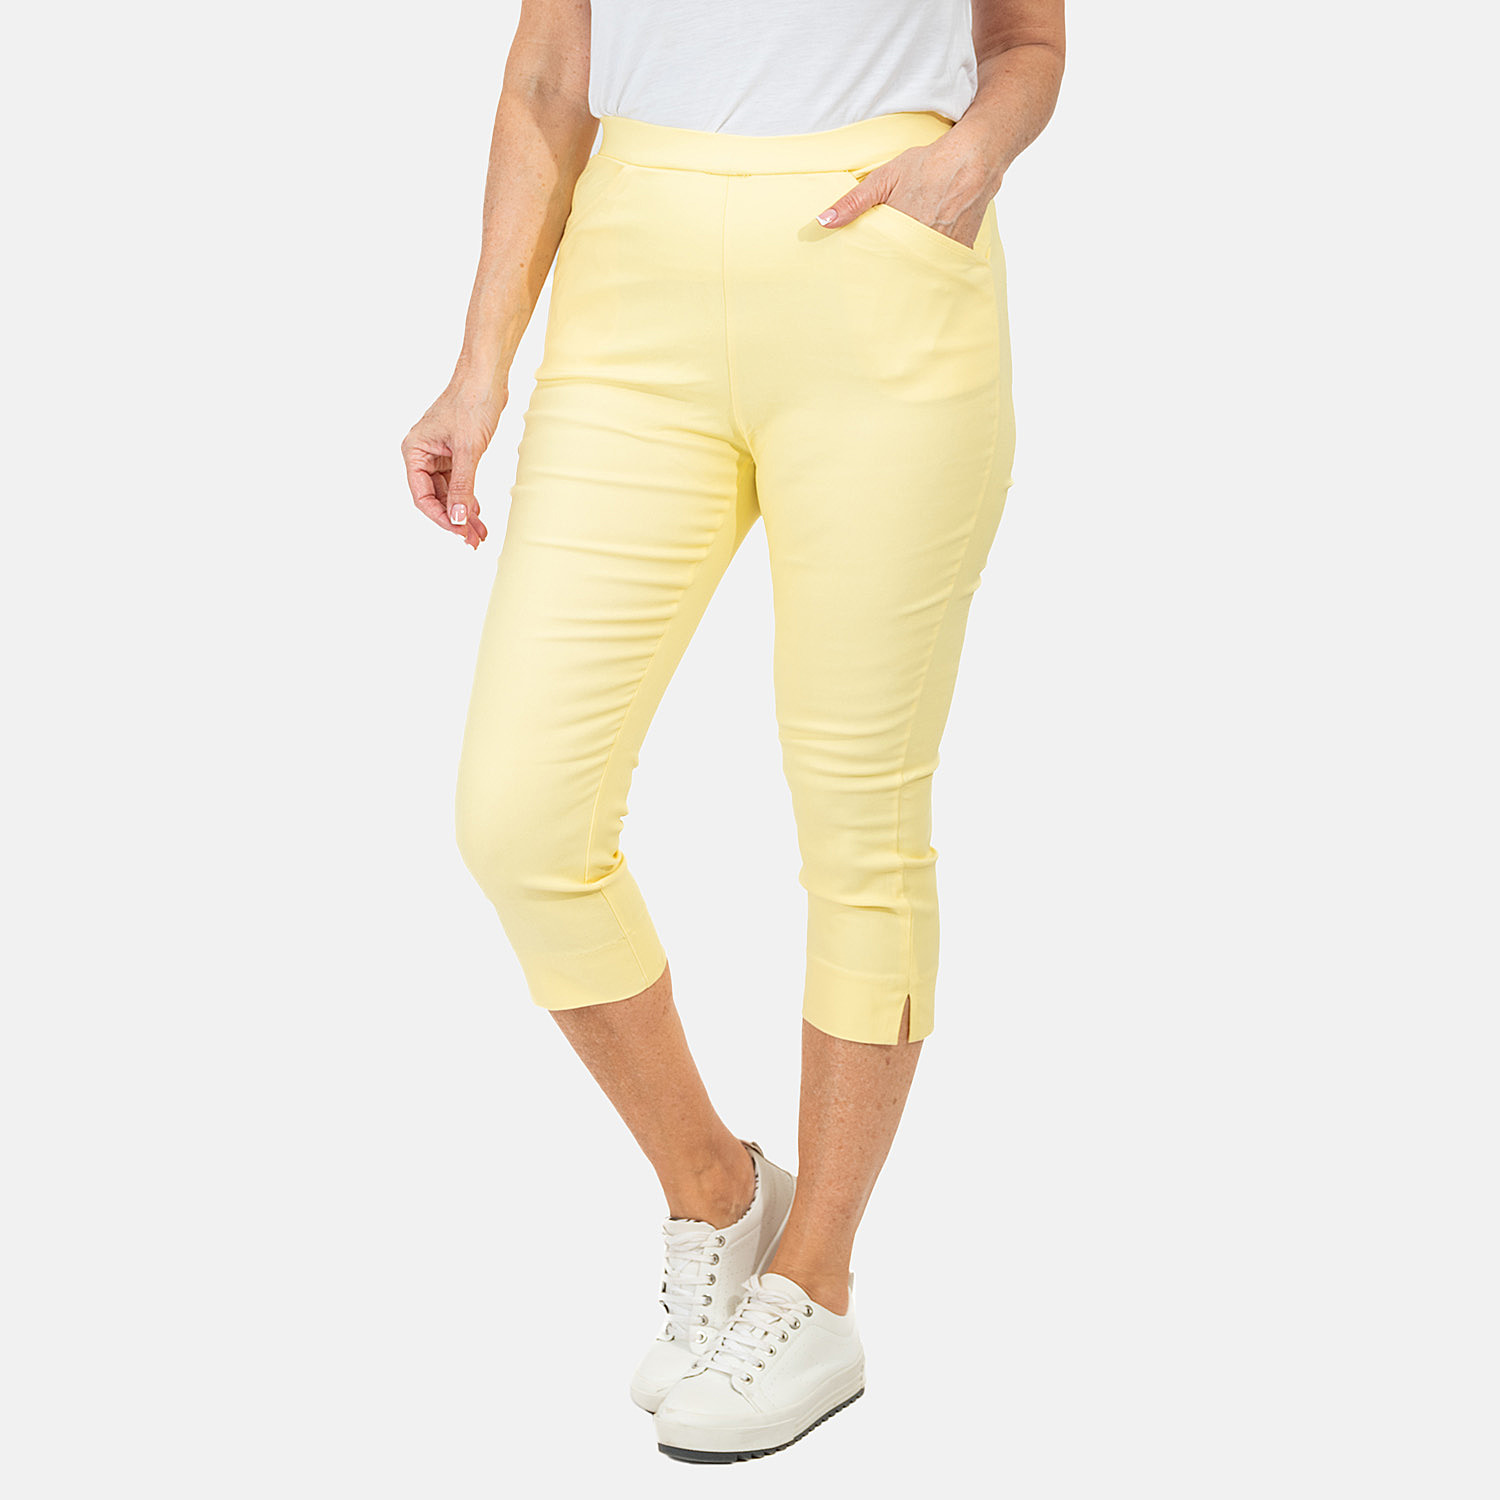 Viscose-Jean-and-Pant-Trouser-Size-1x1-cm-Lemon